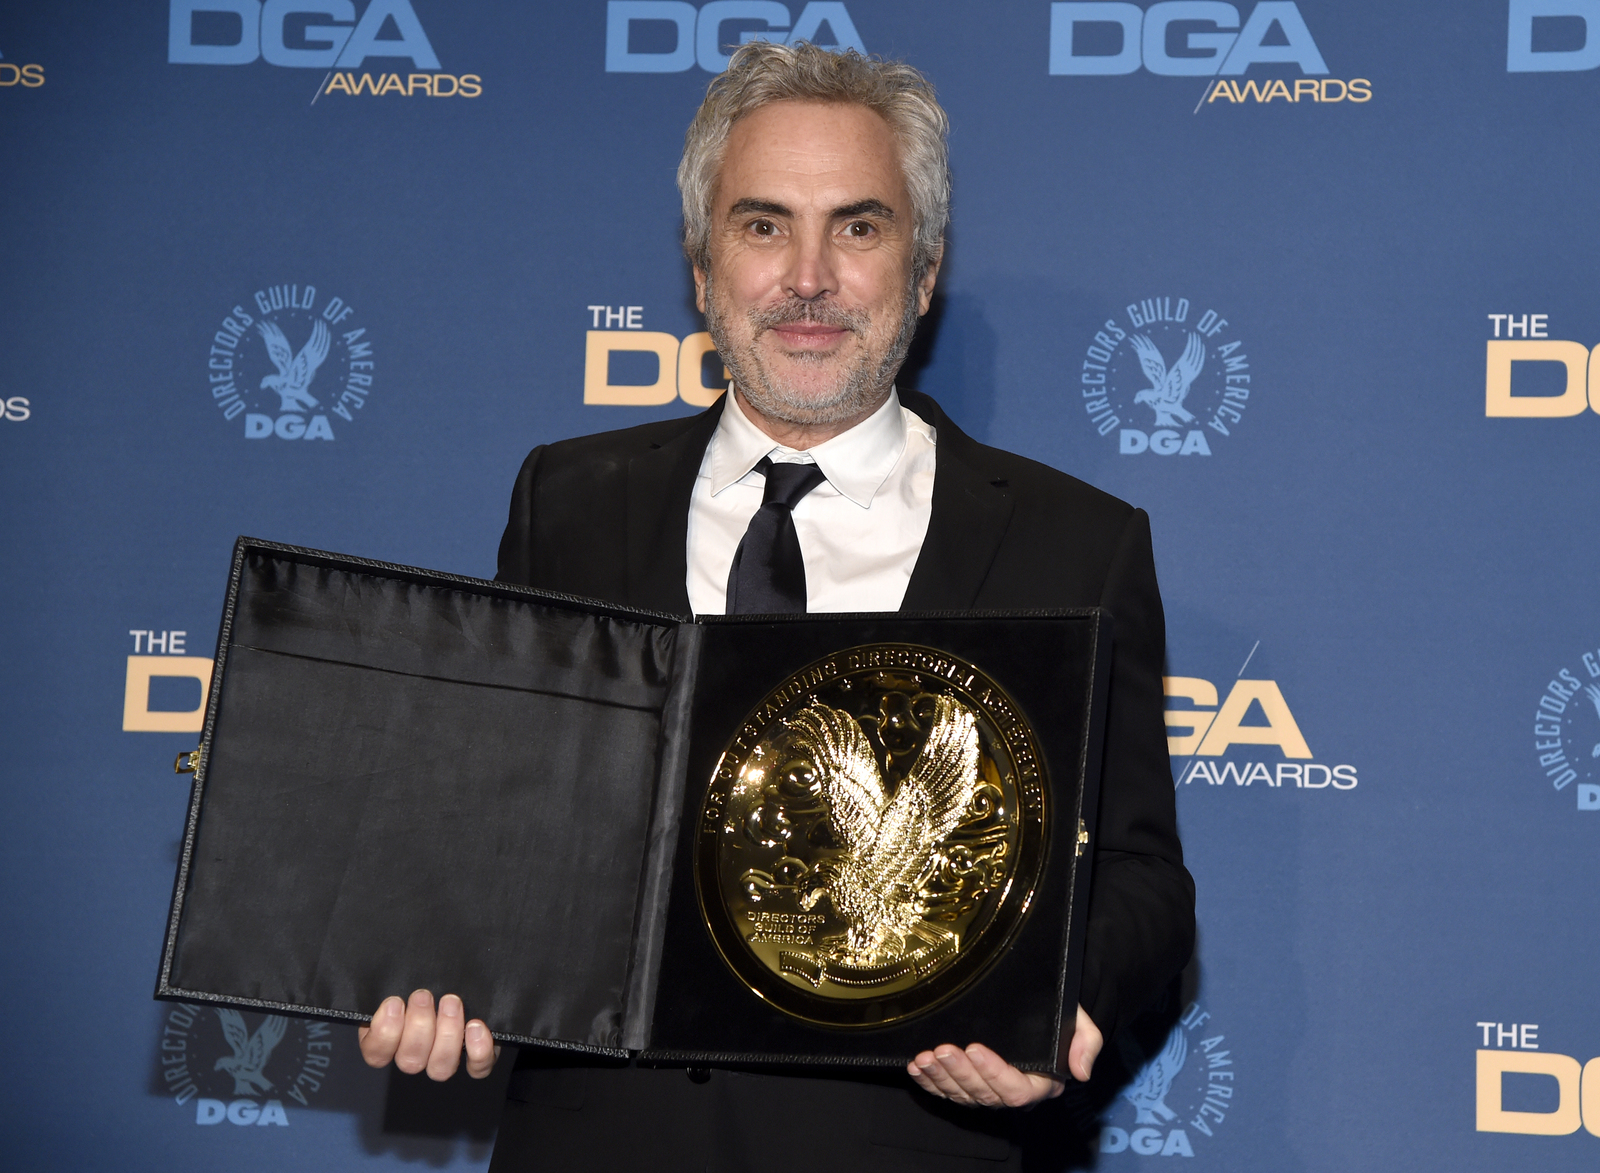 Premiado. Alfonso Cuarón logra su segundo premio DGA por la cinta Roma, en 2014 lo ganó por Gravity.